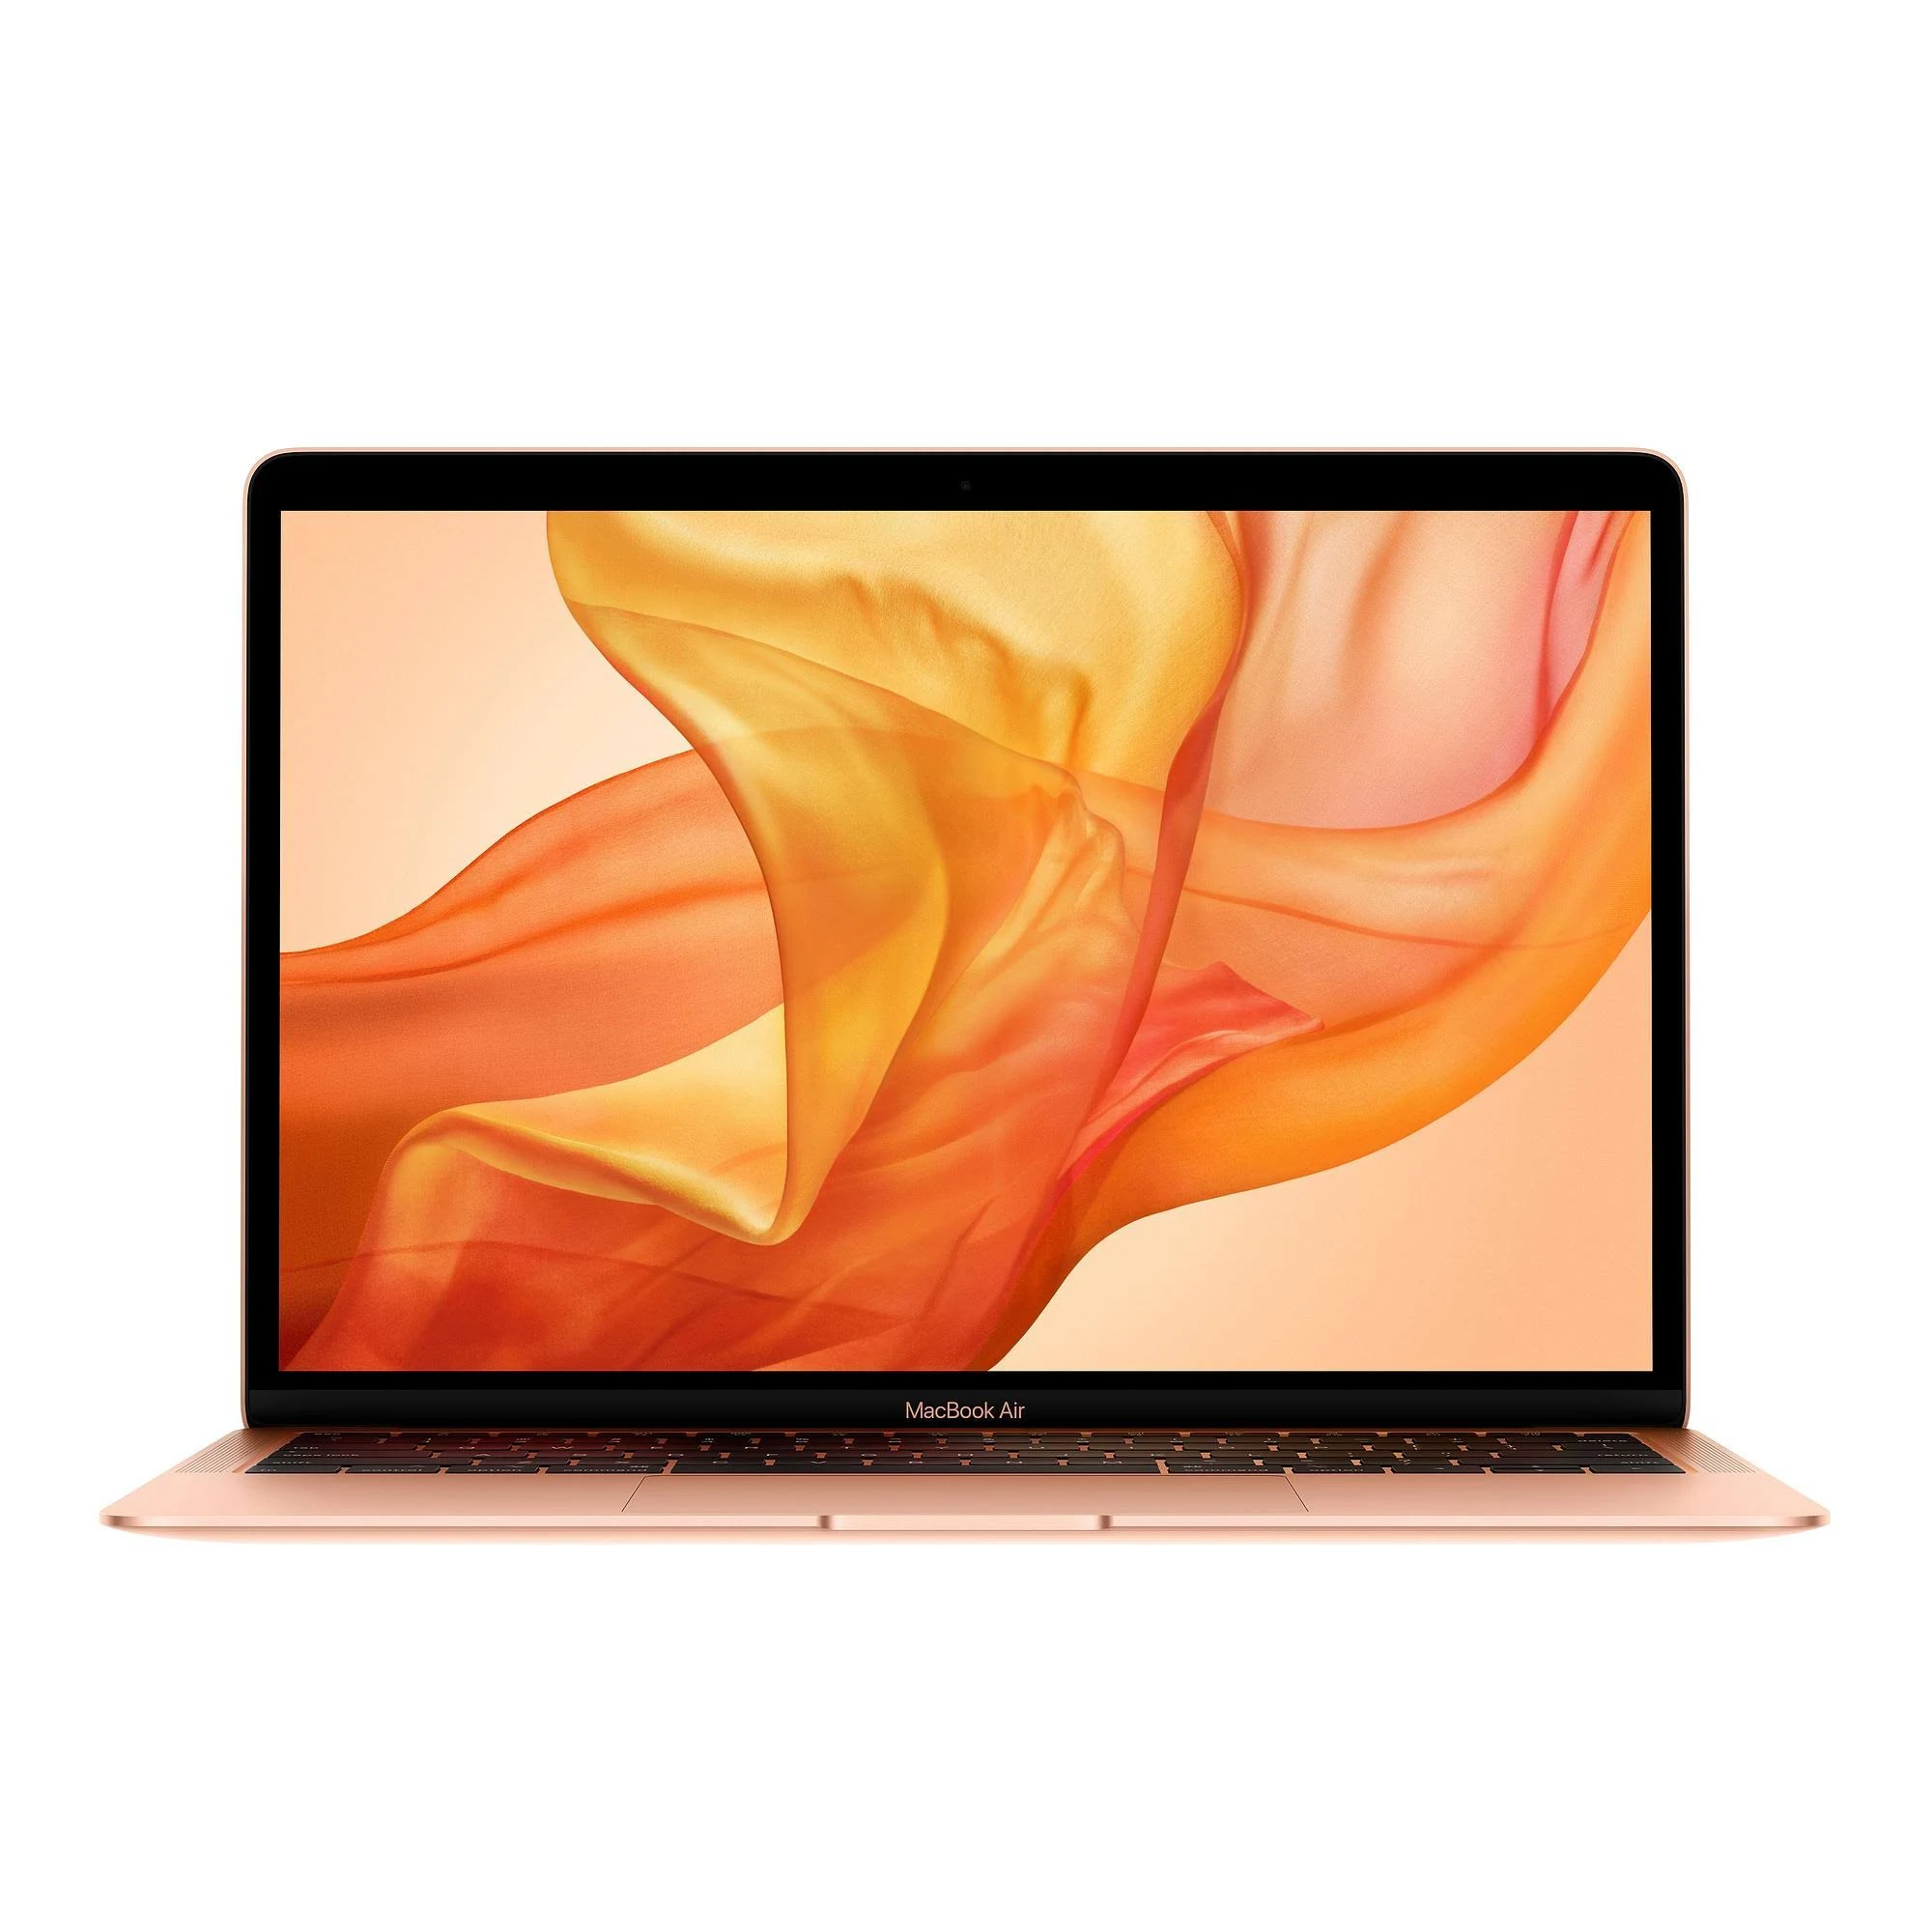 MacBook Air 13 inch 2020 Core i3 1.1GHz - 512GB SSD - 8GB Ram 512GB Gold Pristine